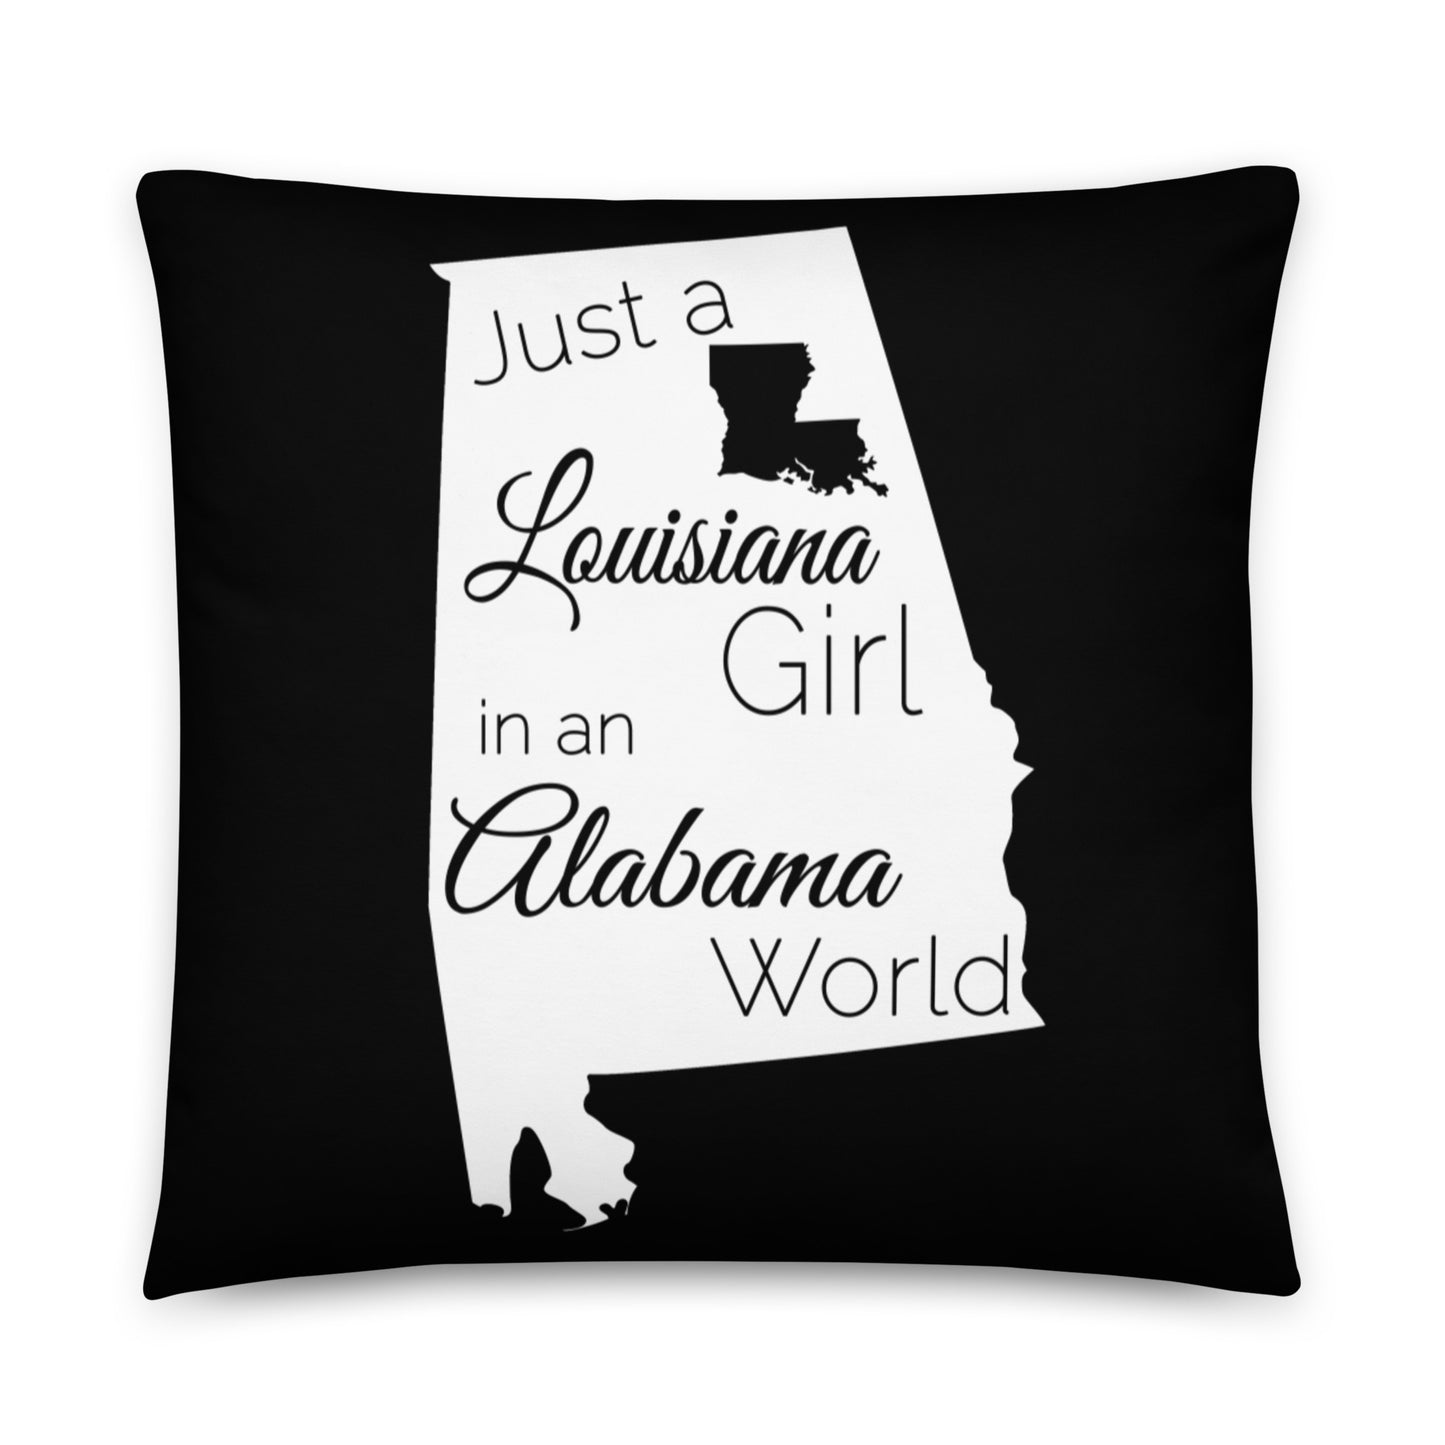 Just a Louisiana Girl in an Alabama World Basic Pillow